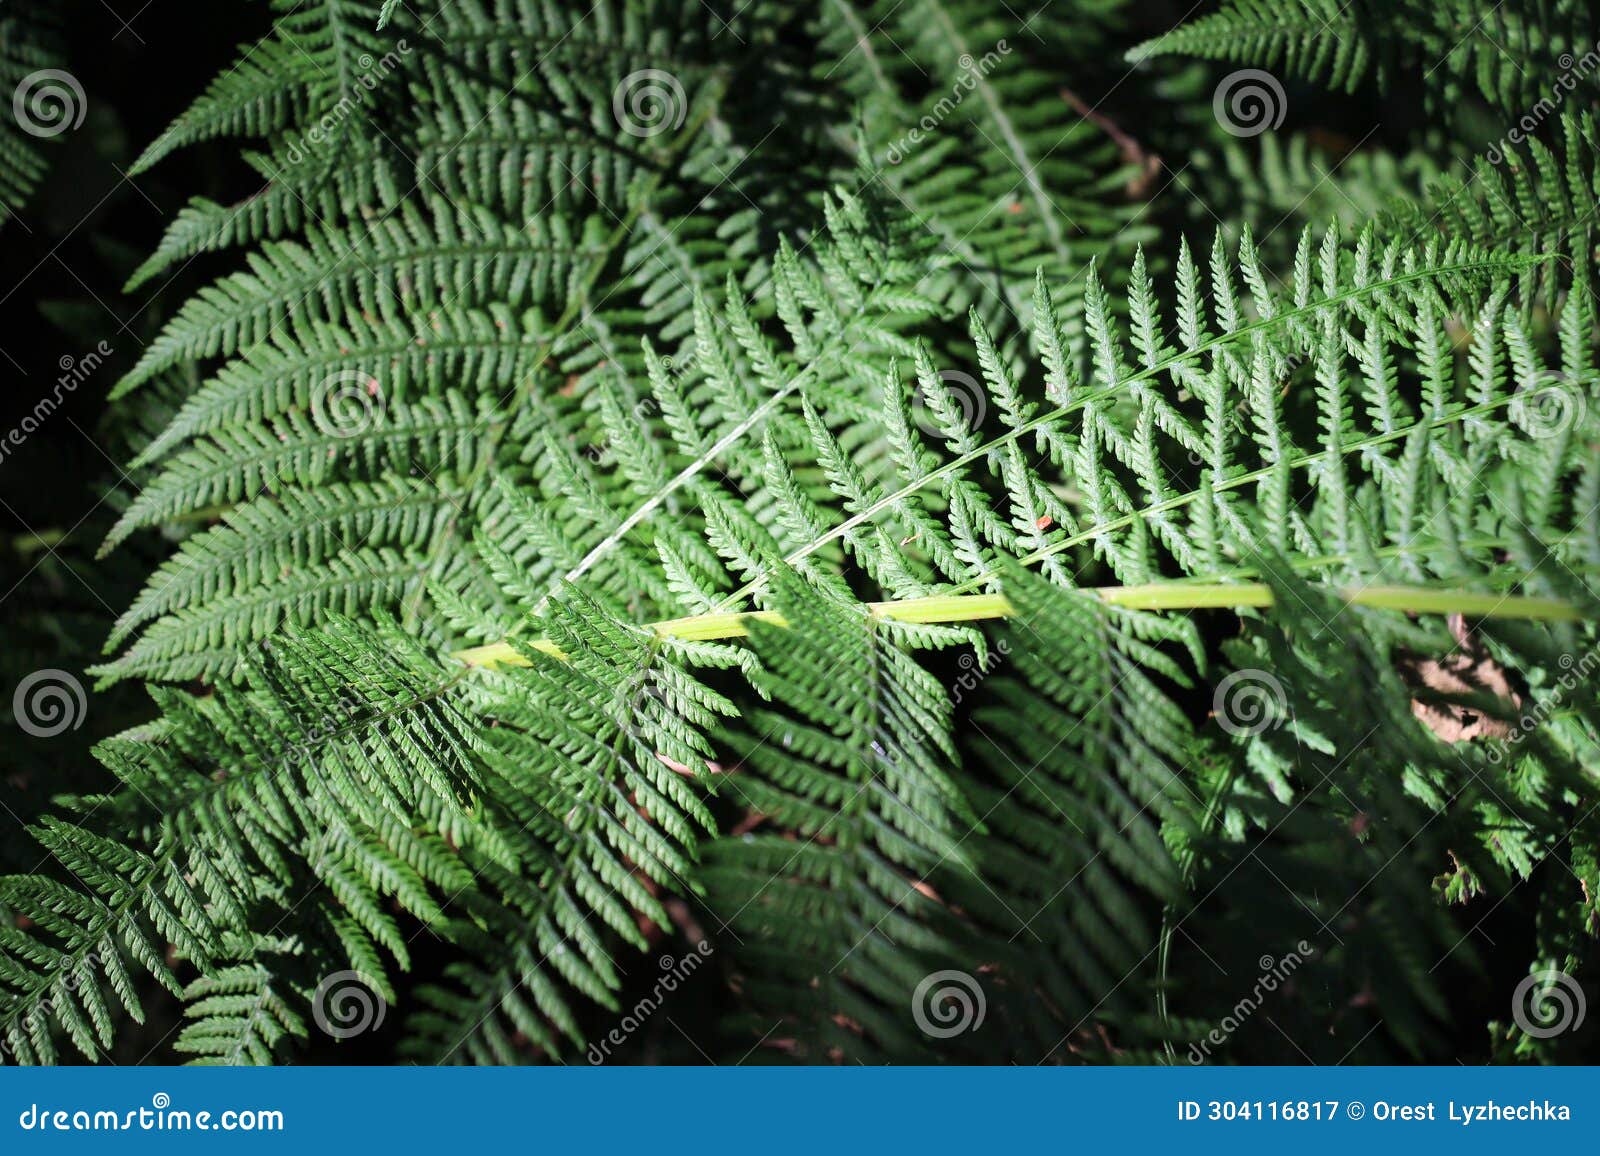 athyrium filix-femina fern grows in nature